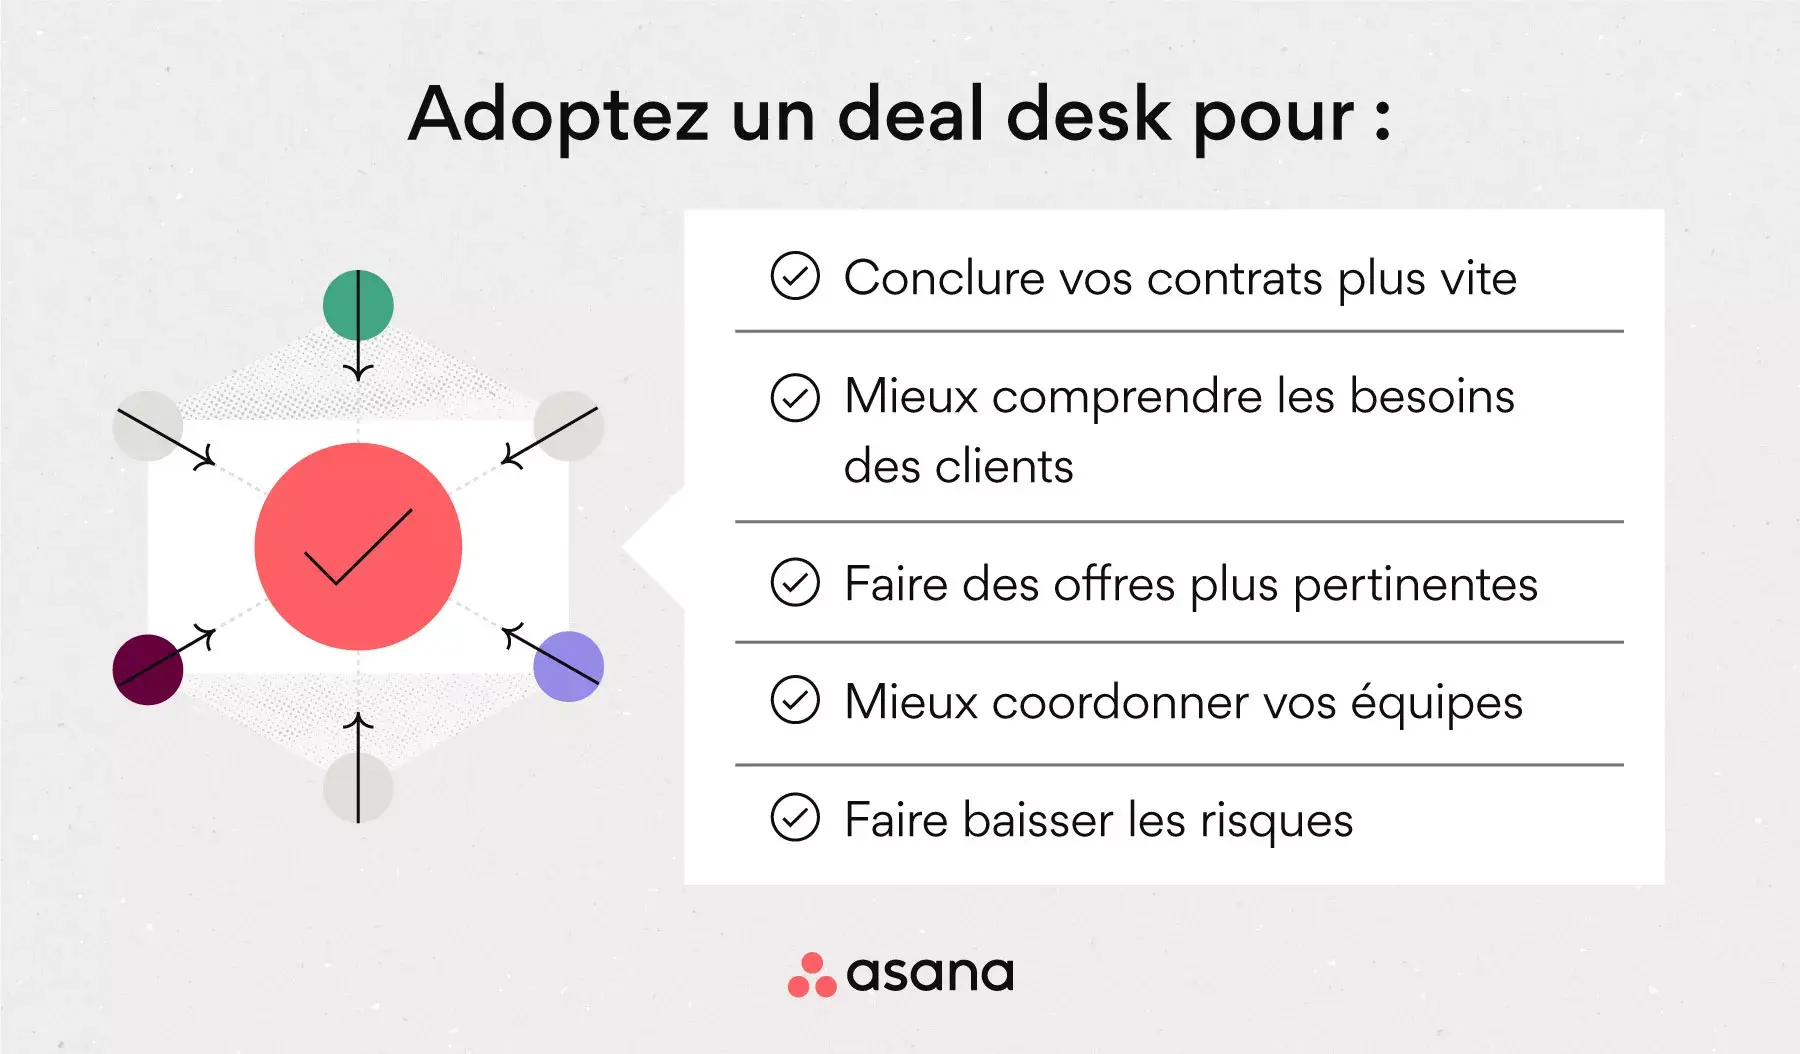 [Illustration intégrée] Les avantages d’un deal desk (infographie)